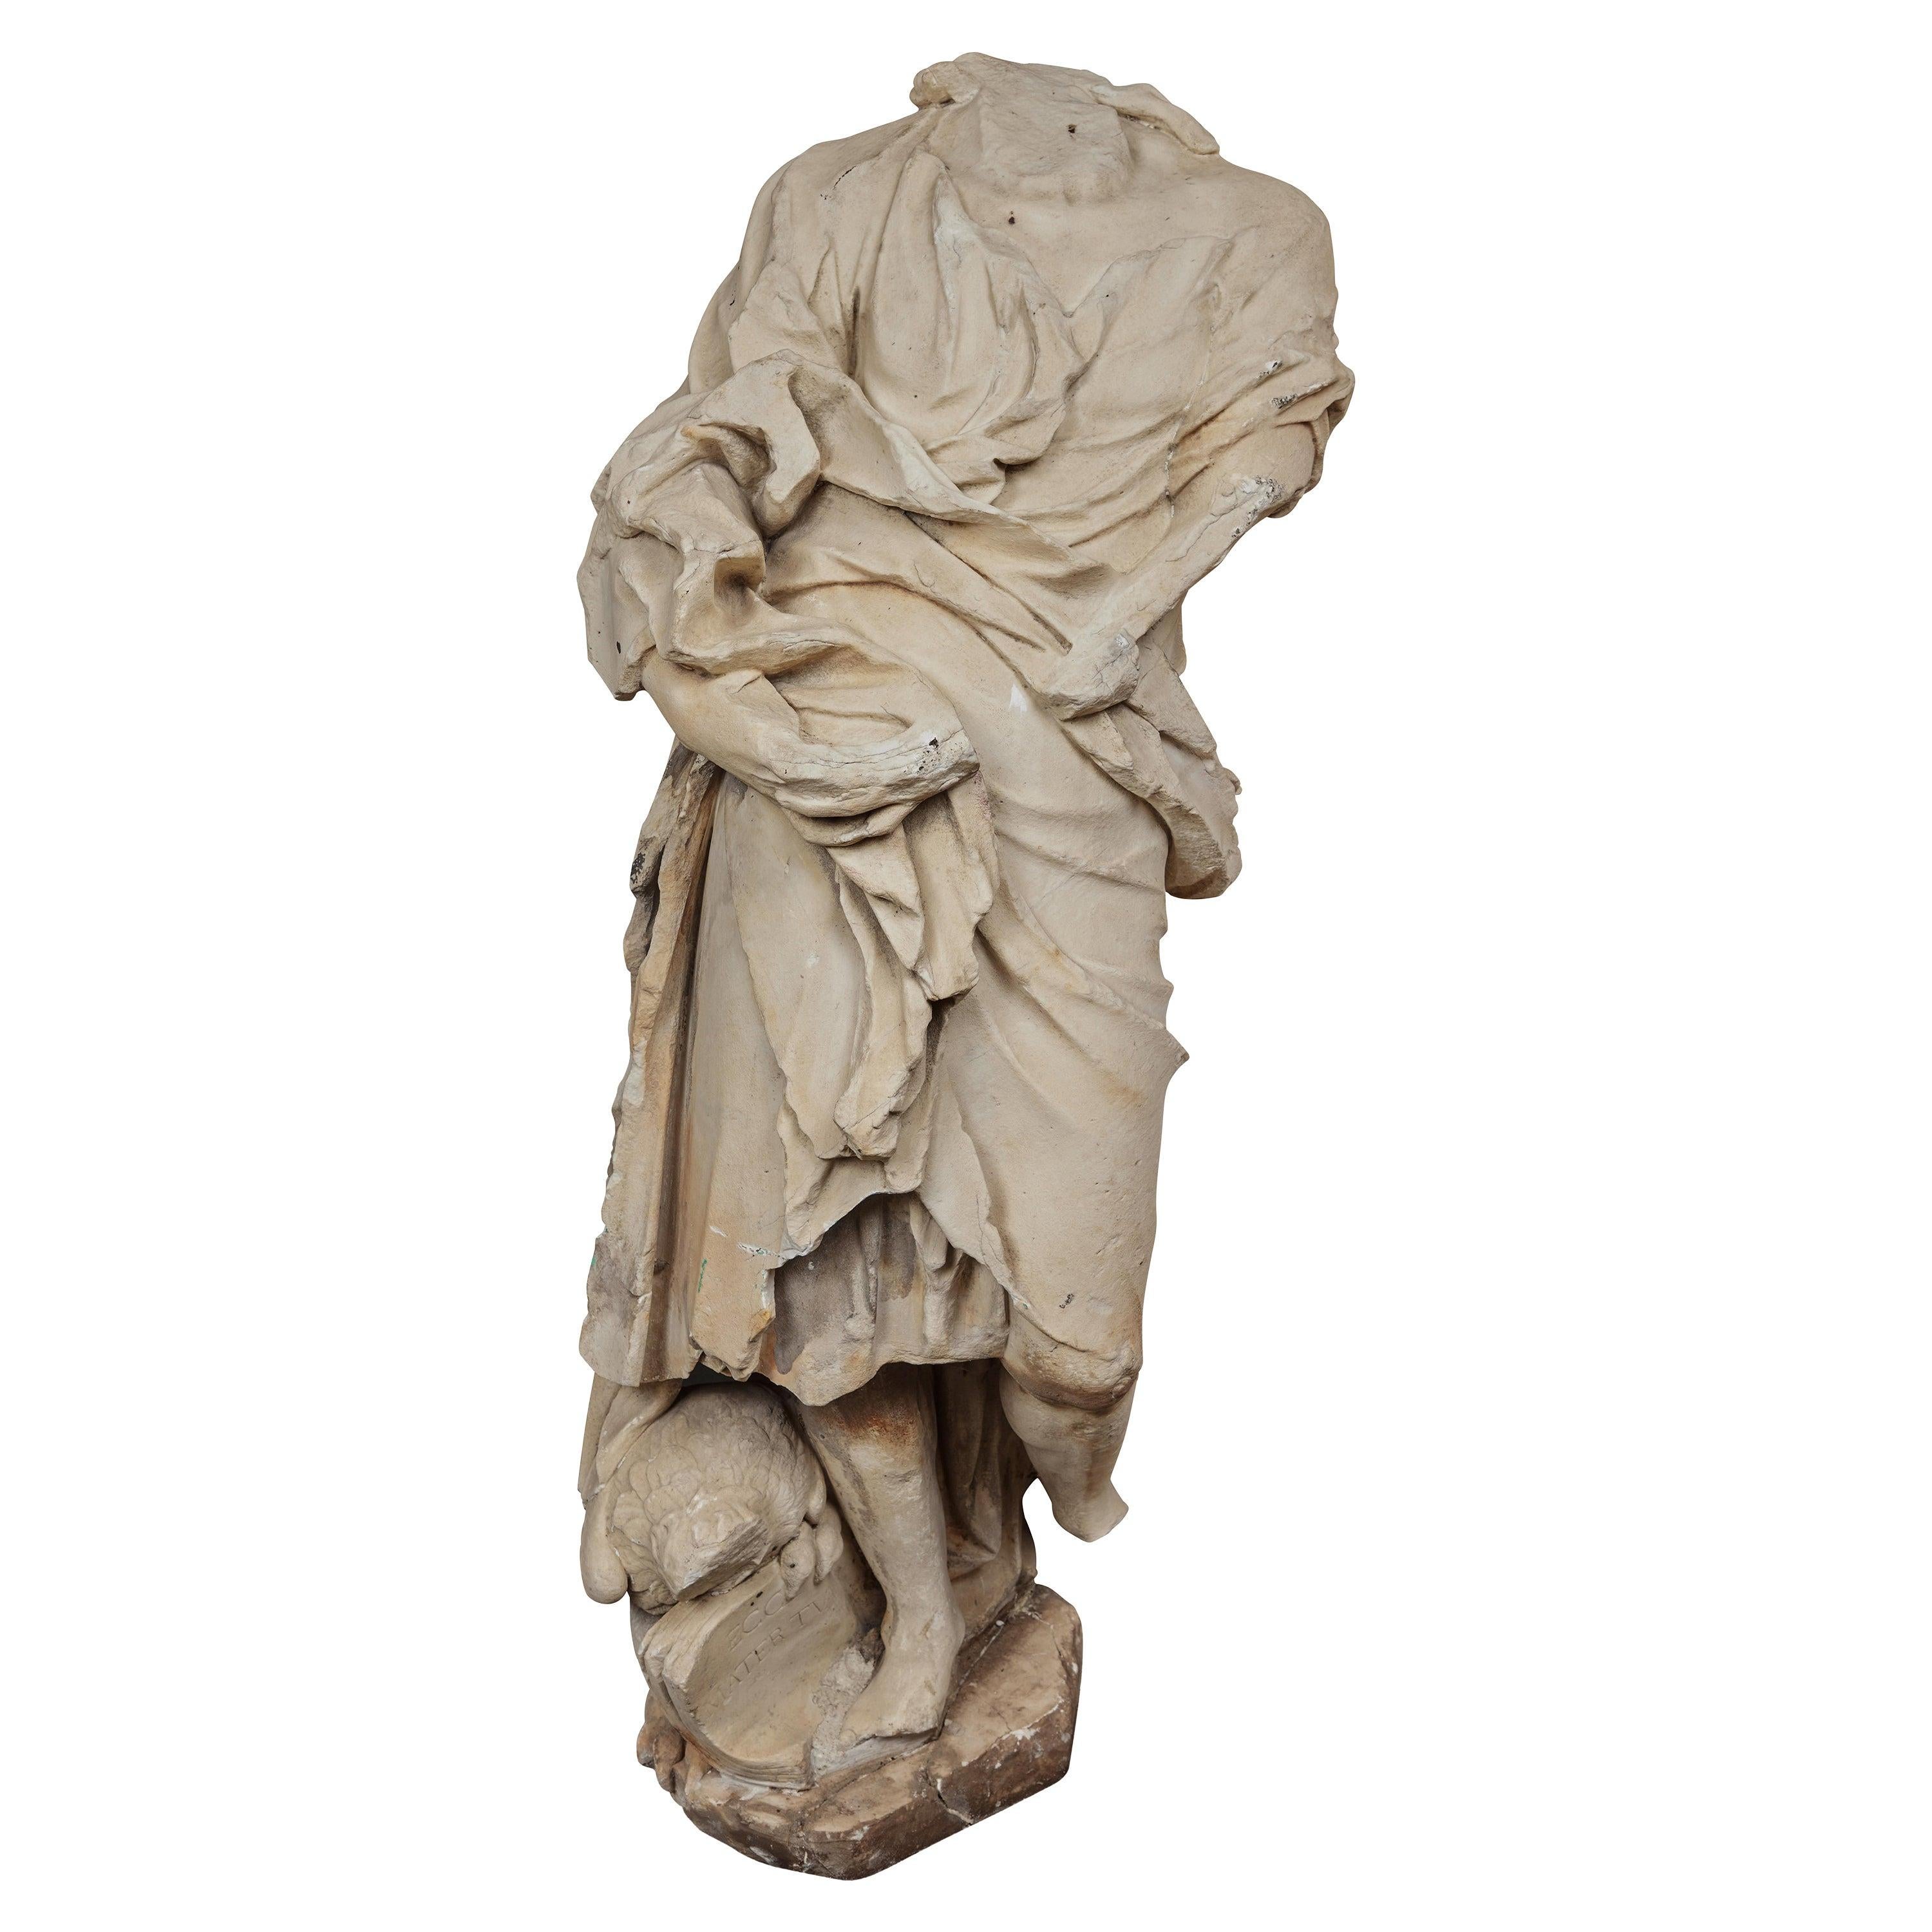 Unknown Figurative Sculpture - Renaissance Era Marble Figure Fragment